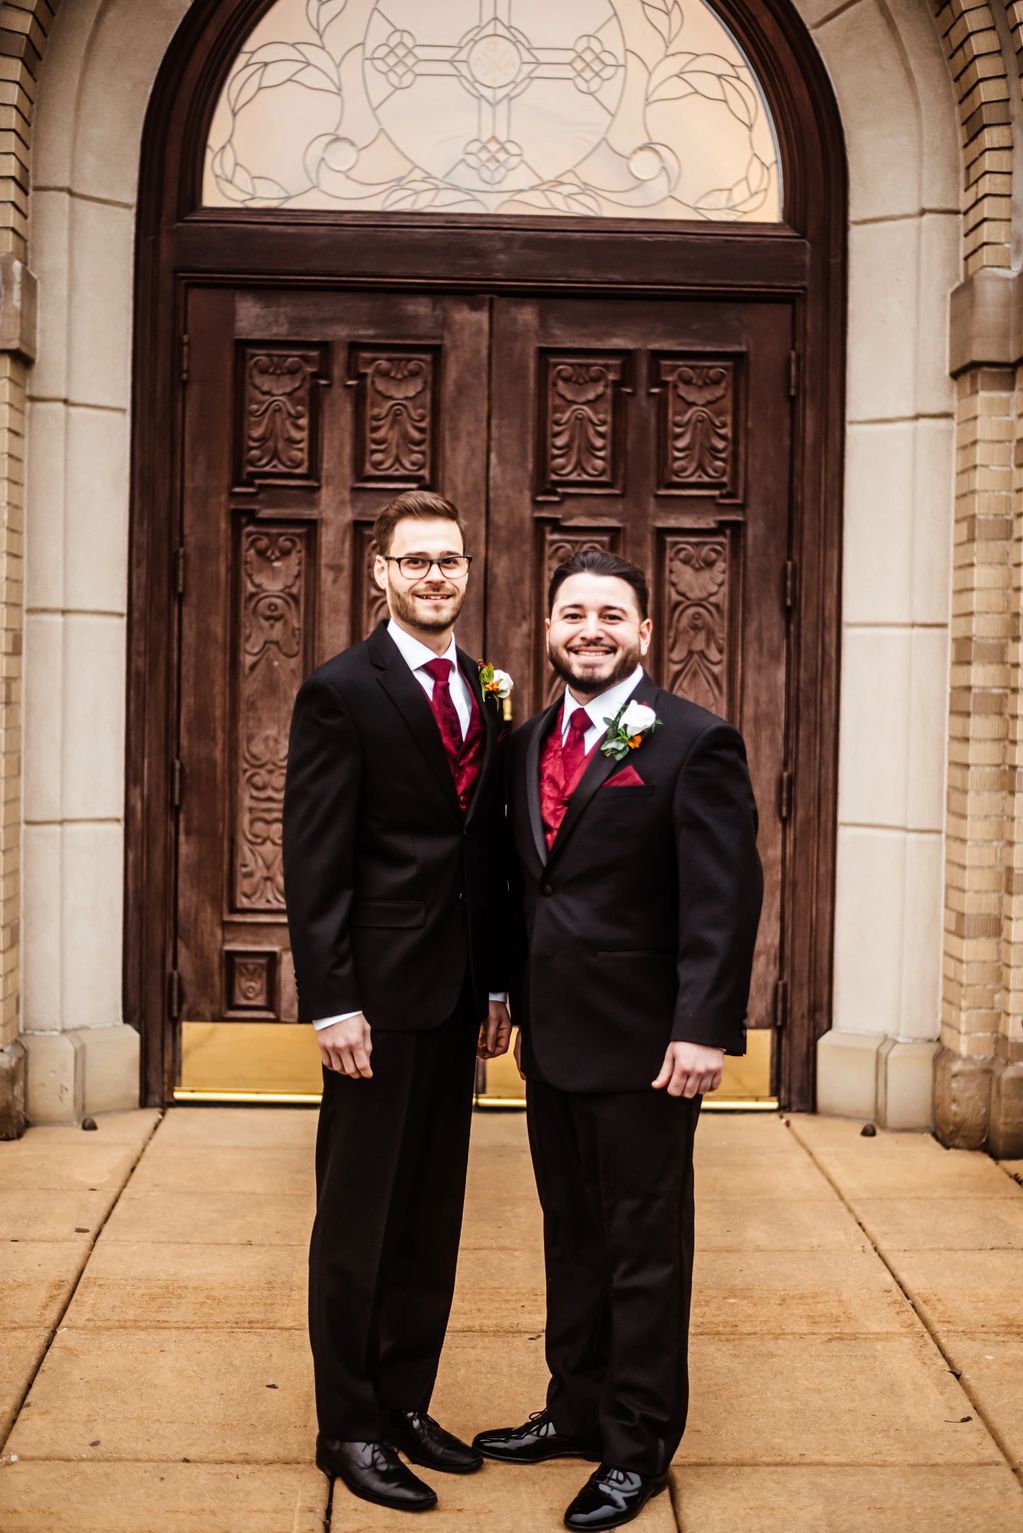 Two men in their wedding tuxedos